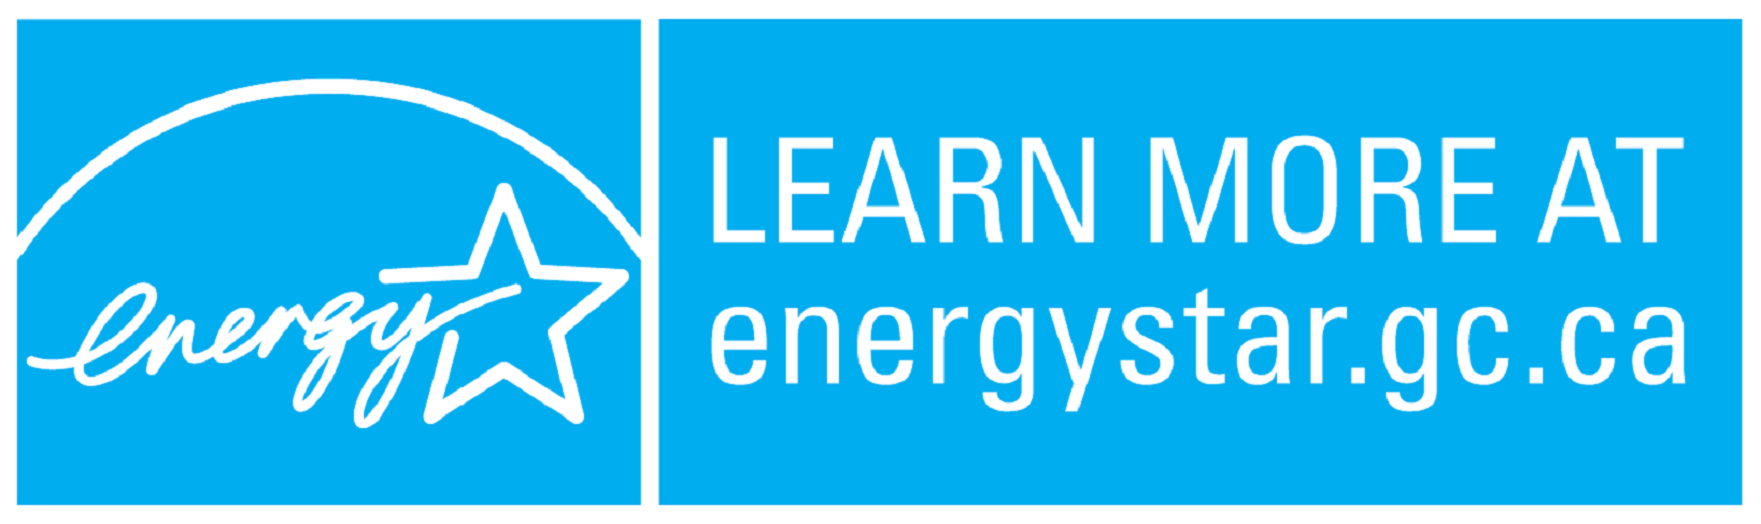 LEARN MORE AT energystar.gc.ca, horizontal cyan symbol